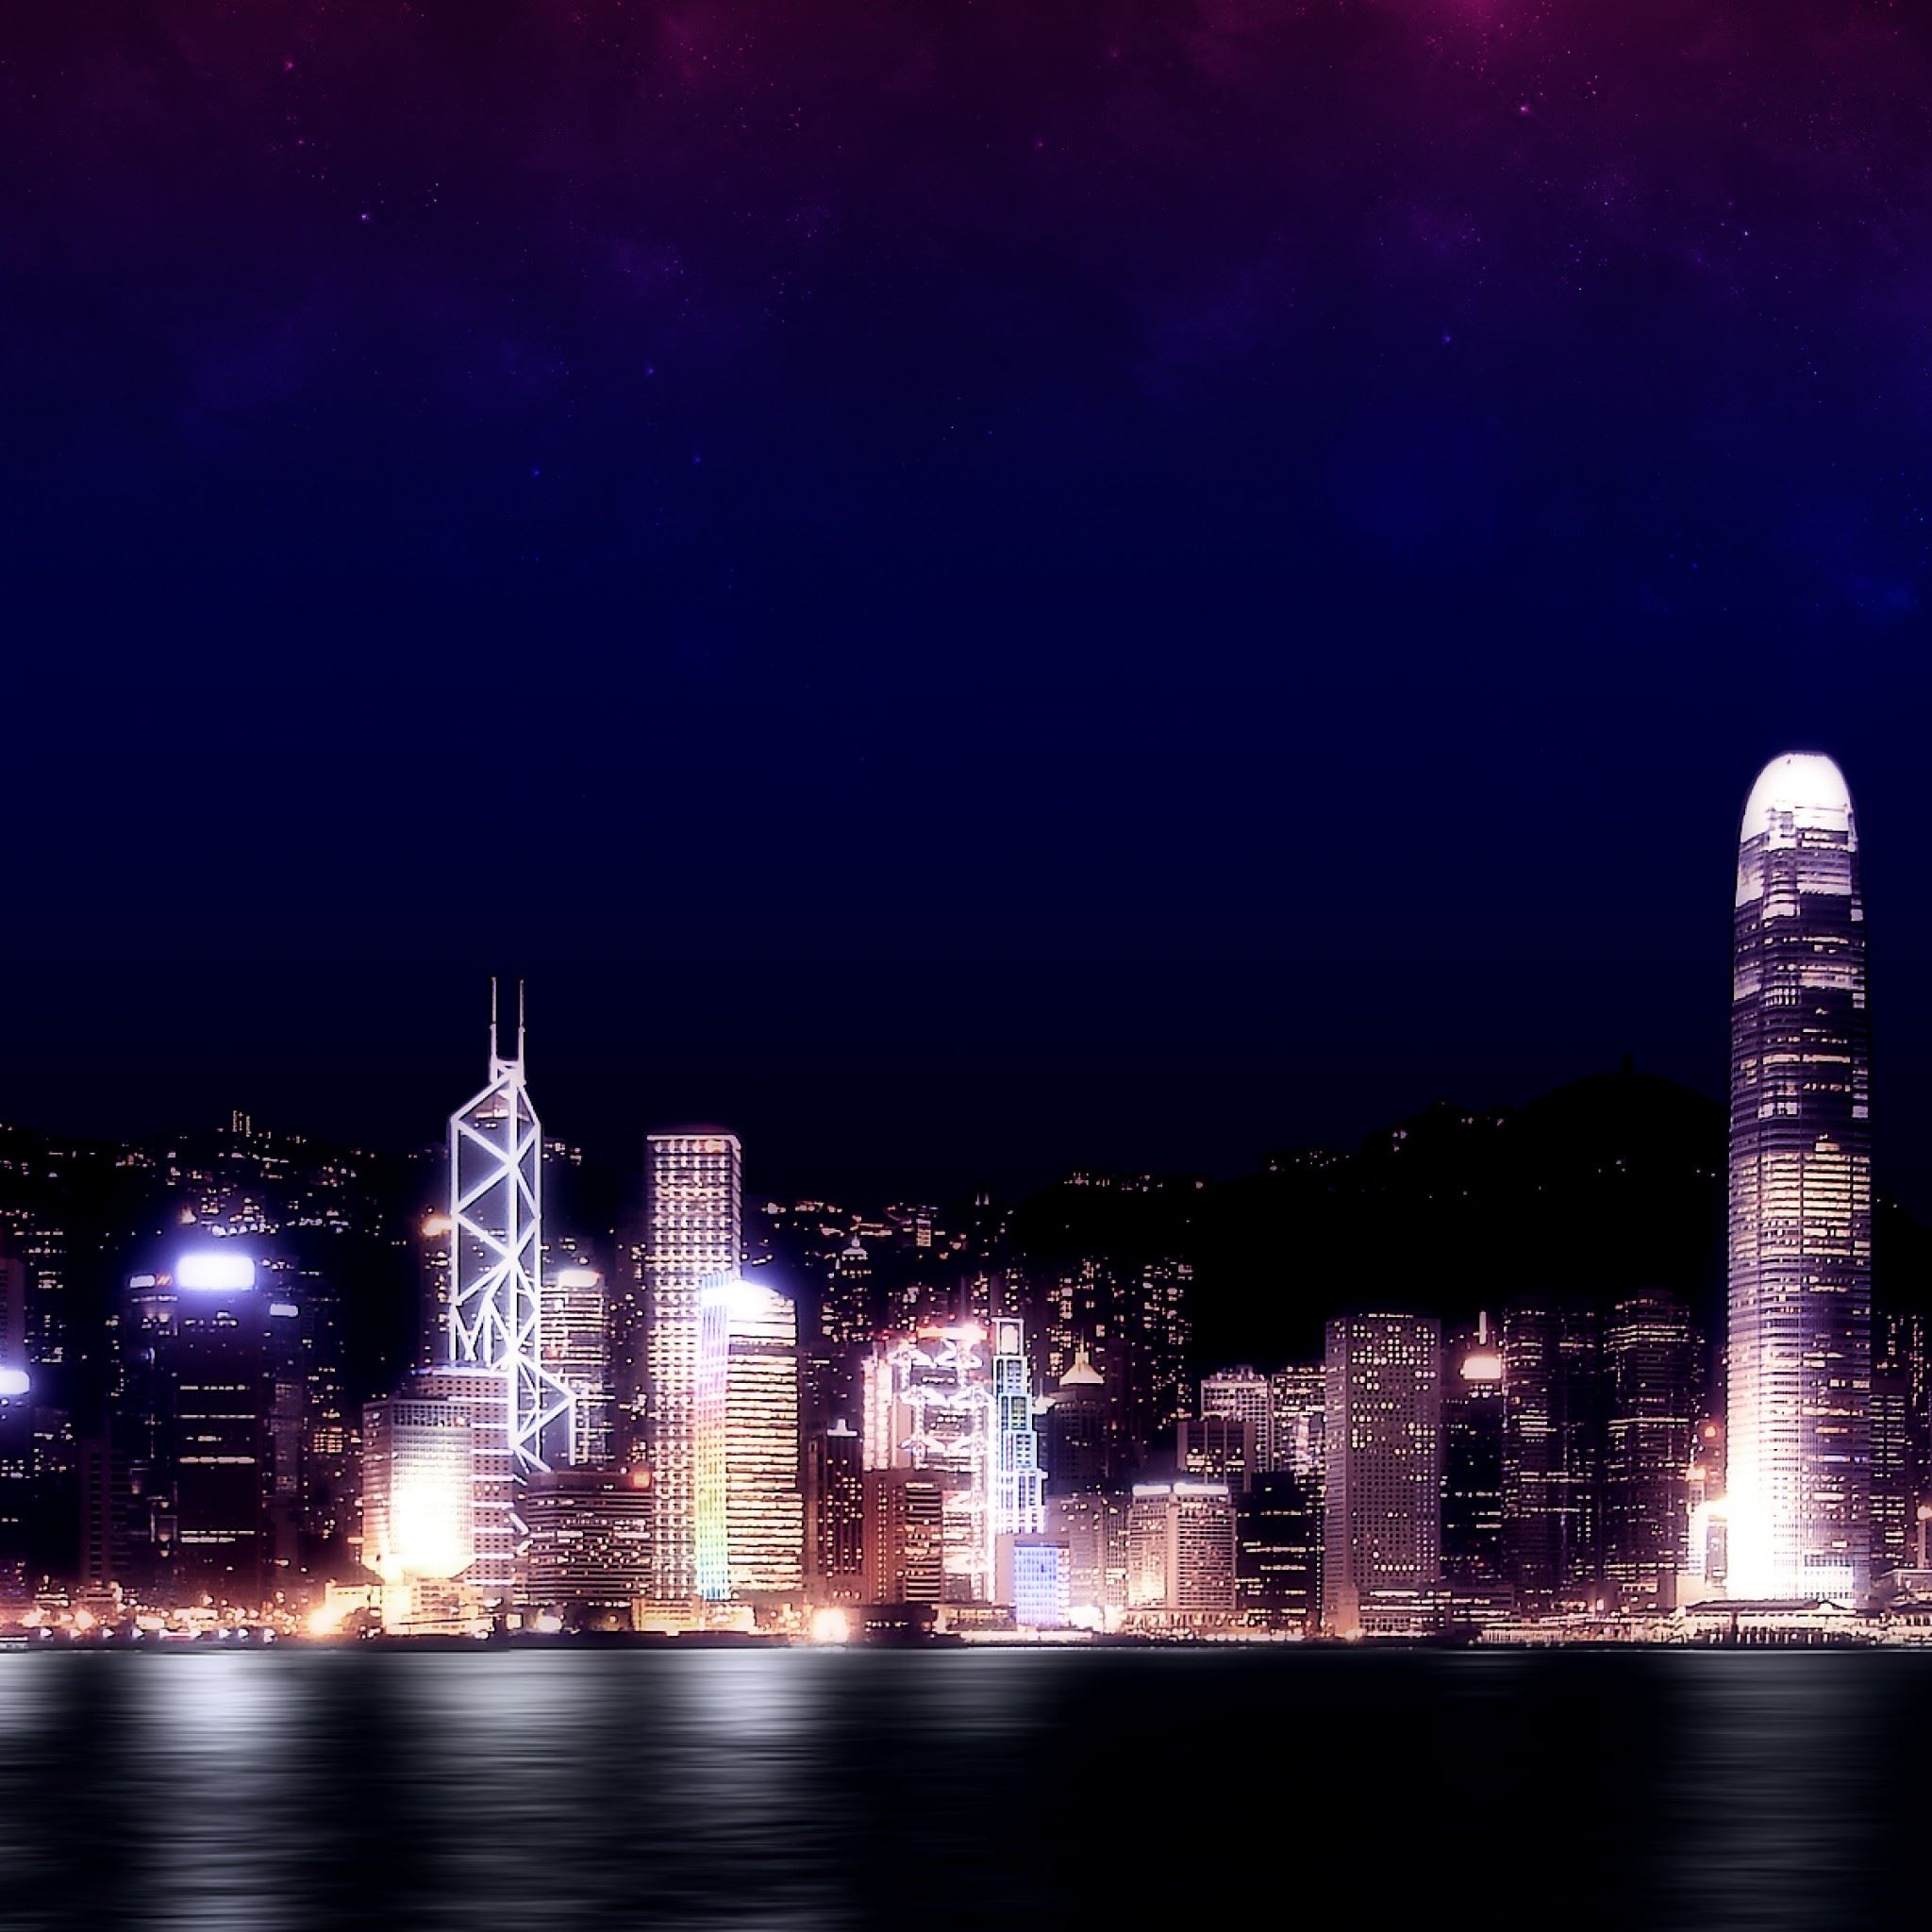 Hong Kong Night iPad Air wallpaper 